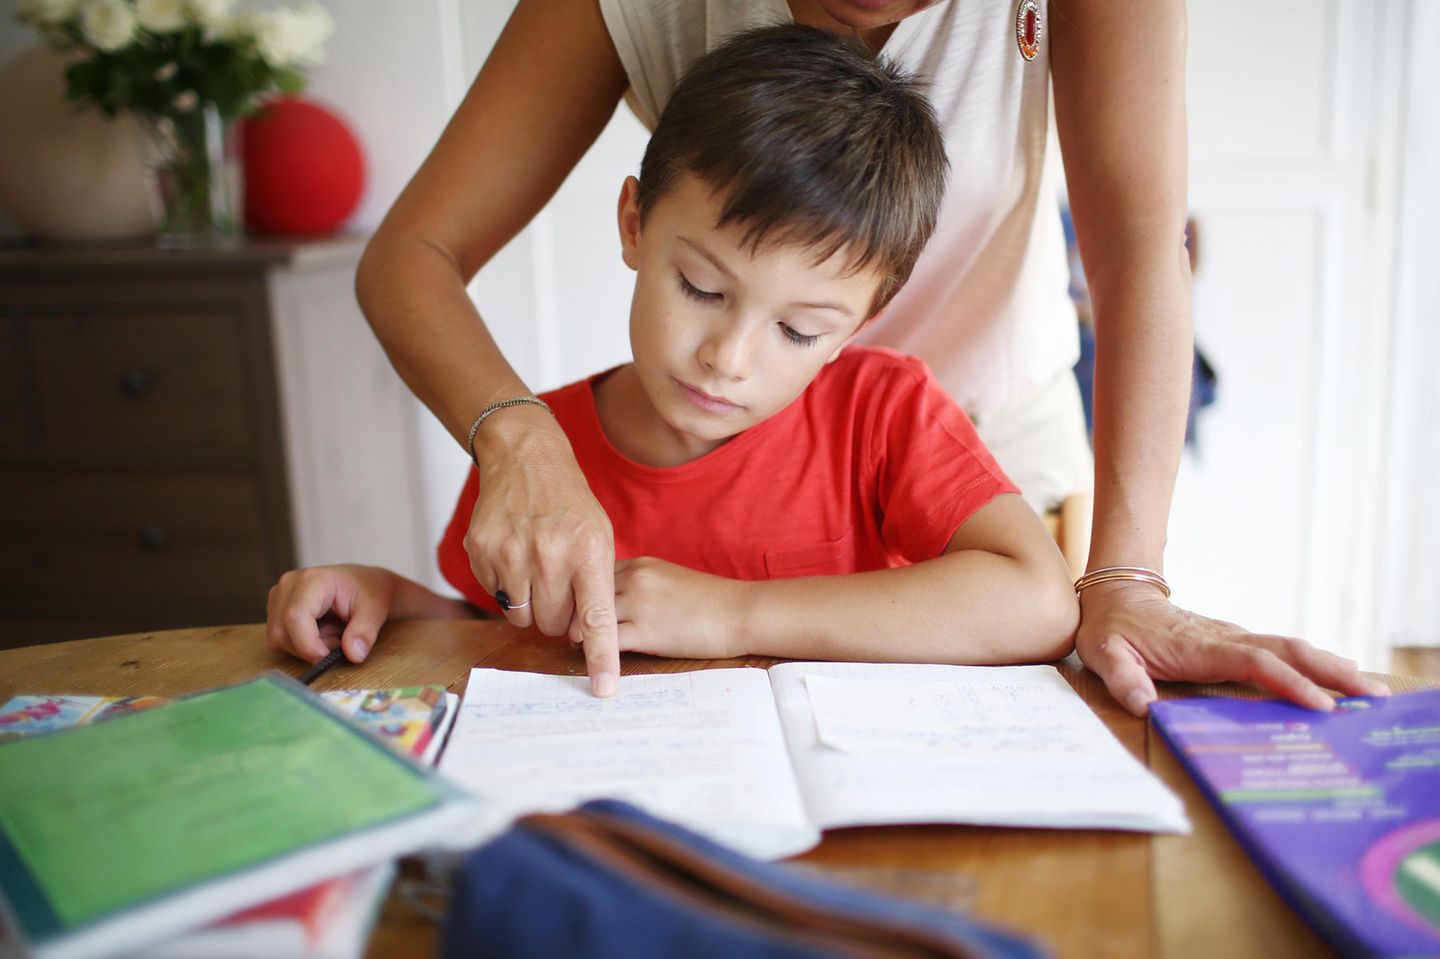 Coronavirus-News: 5 Expertentipps fürs Lernen zu Hause - Mutter hilft Sohn beim Lernen